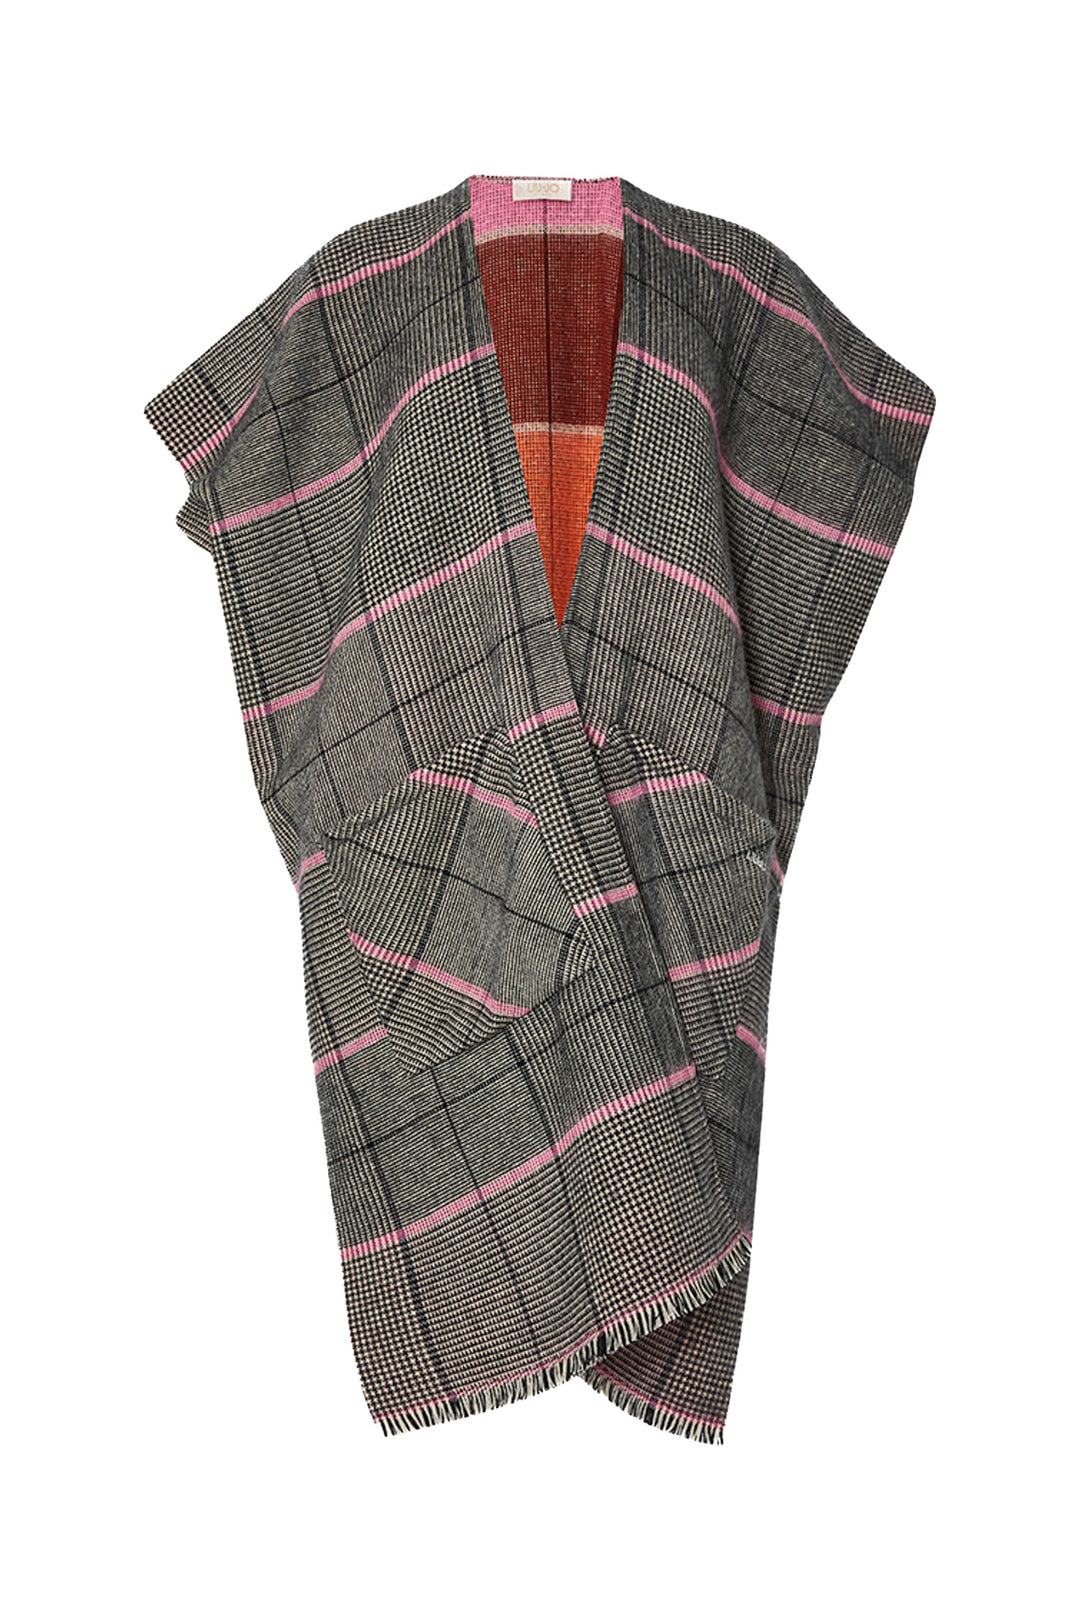 LIU JO Gilet Principe di Galles rosa in tessuto garzato - Mancinelli 1954